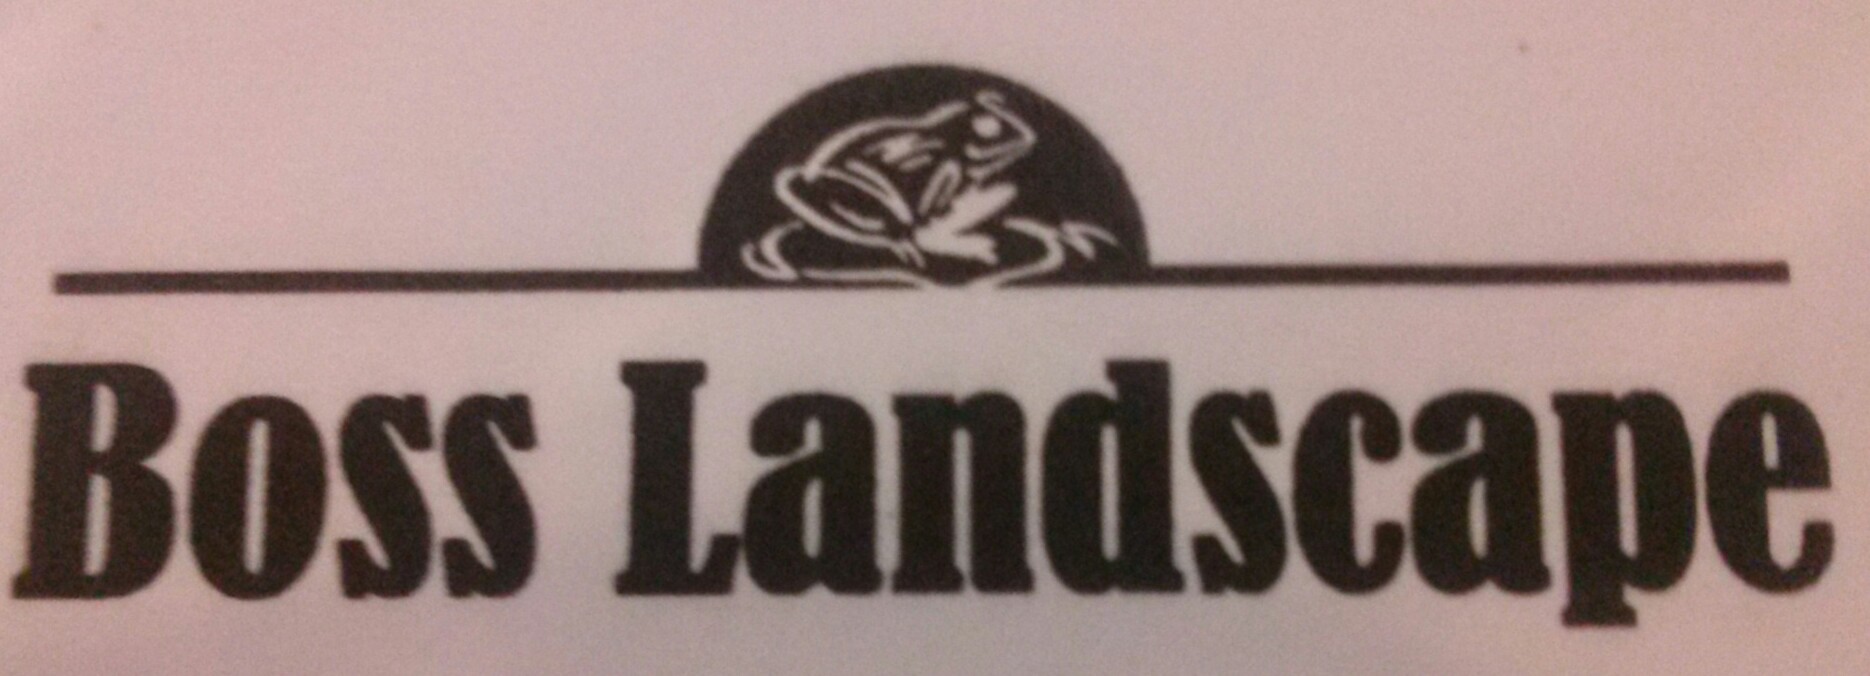 Boss Landscape Logo